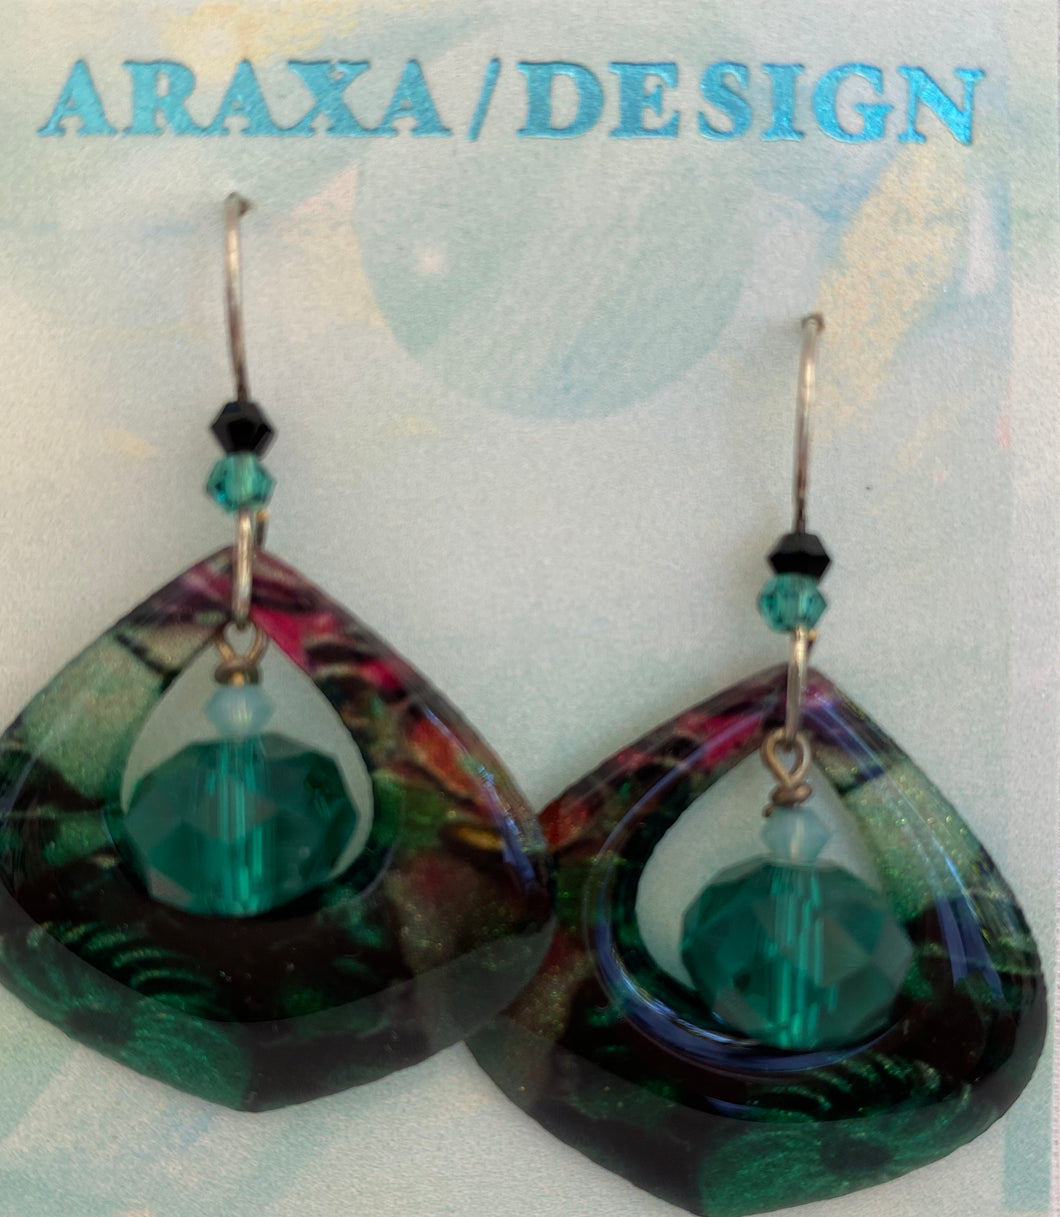 Araxa Design Resin Earrings